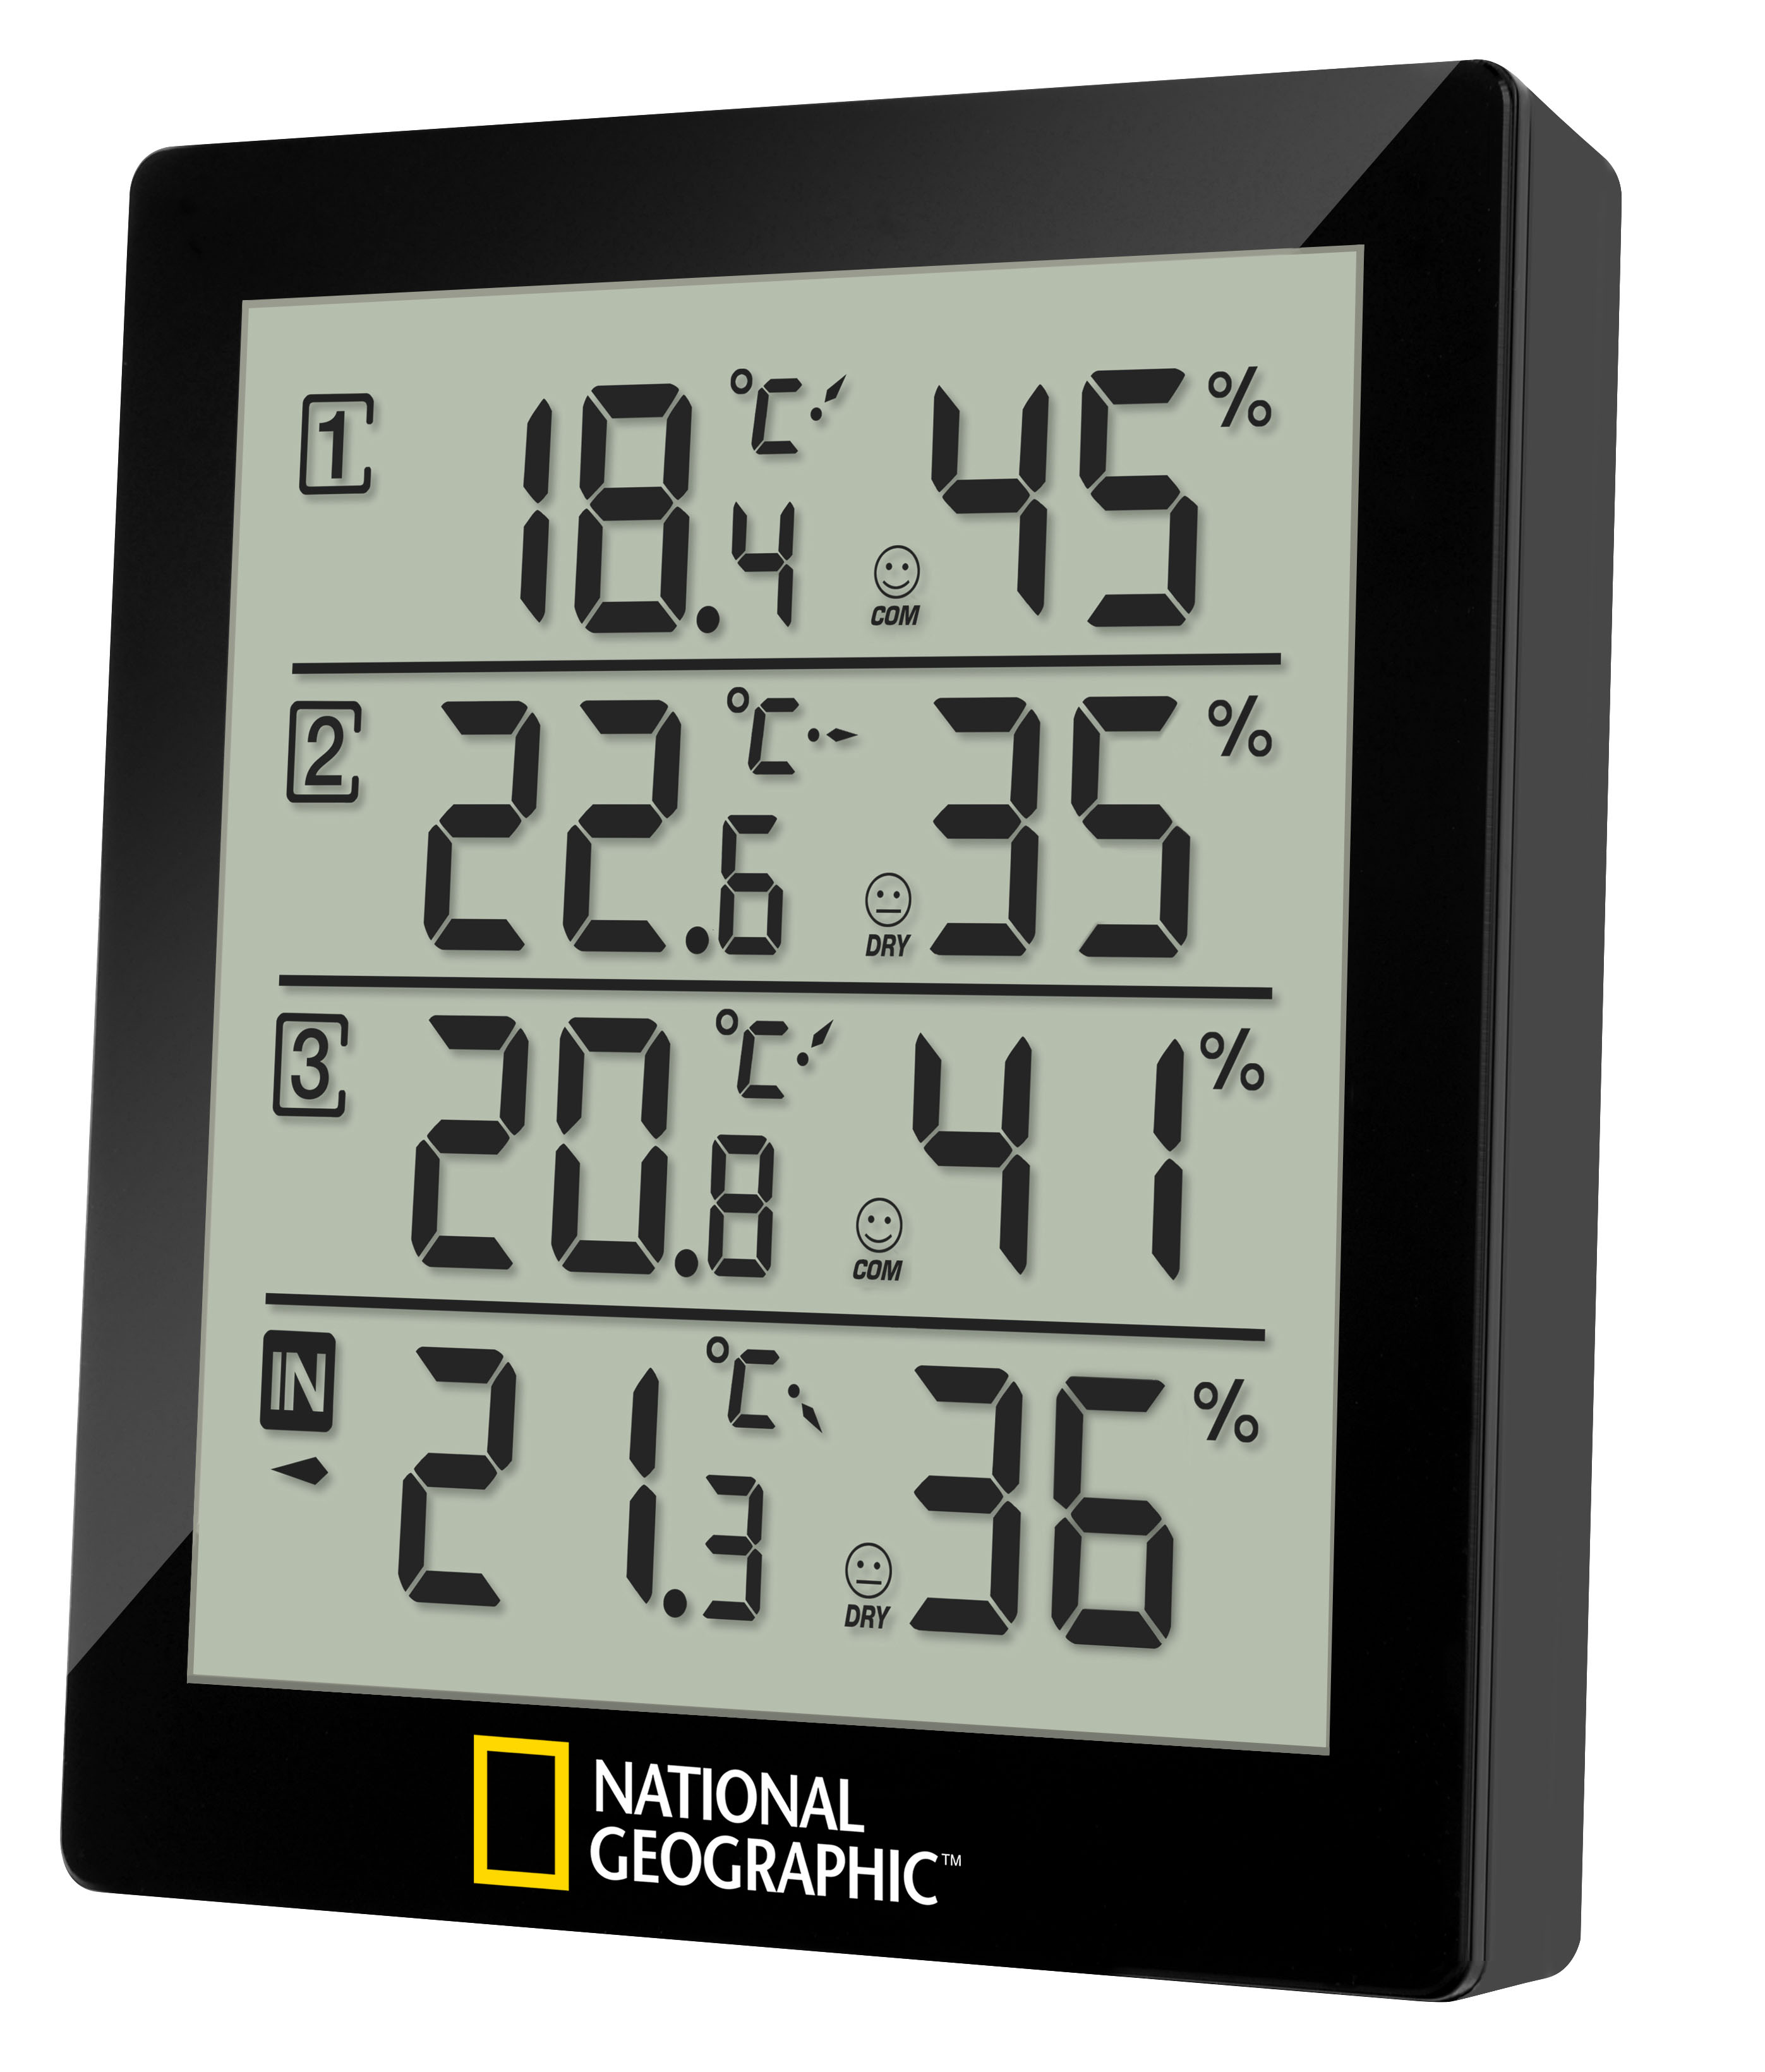 NATIONAL GEOGRAPHIC digitales Thermo-Hygrometer für 4 Messbereiche - schwarz (Refurbished)